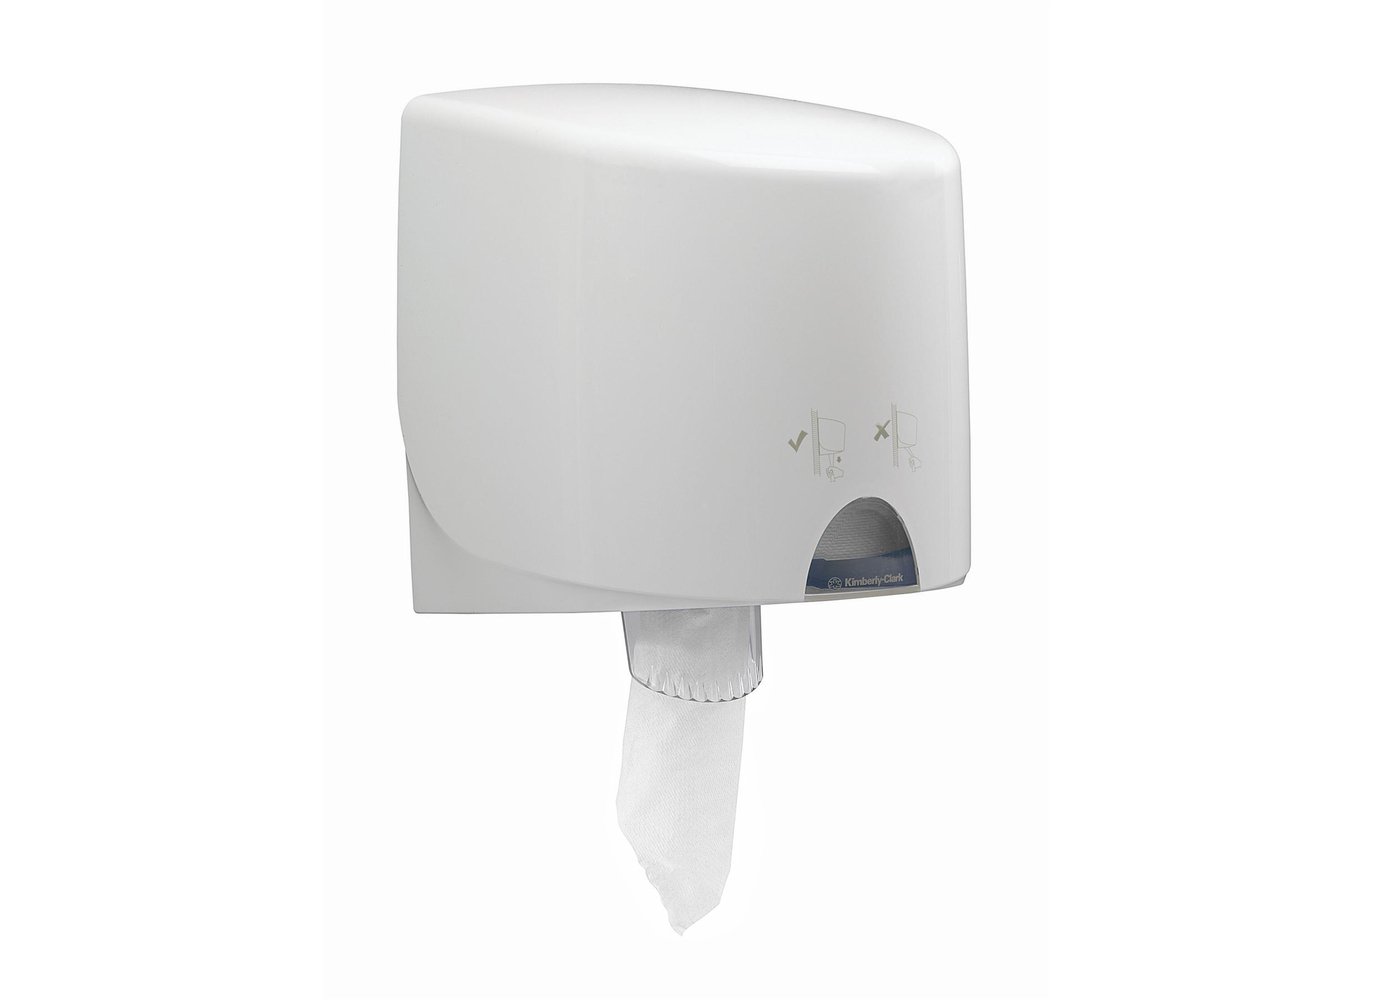 Essuyeur WypAll® L10 Hygiène & Surfaces Alimentaires 7256 - Essuyeur de nettoyage blanc 1 épaisseur - 6 rouleaux à dévidage central x 800 essuyeurs en papier (4 800 au total) - 7256